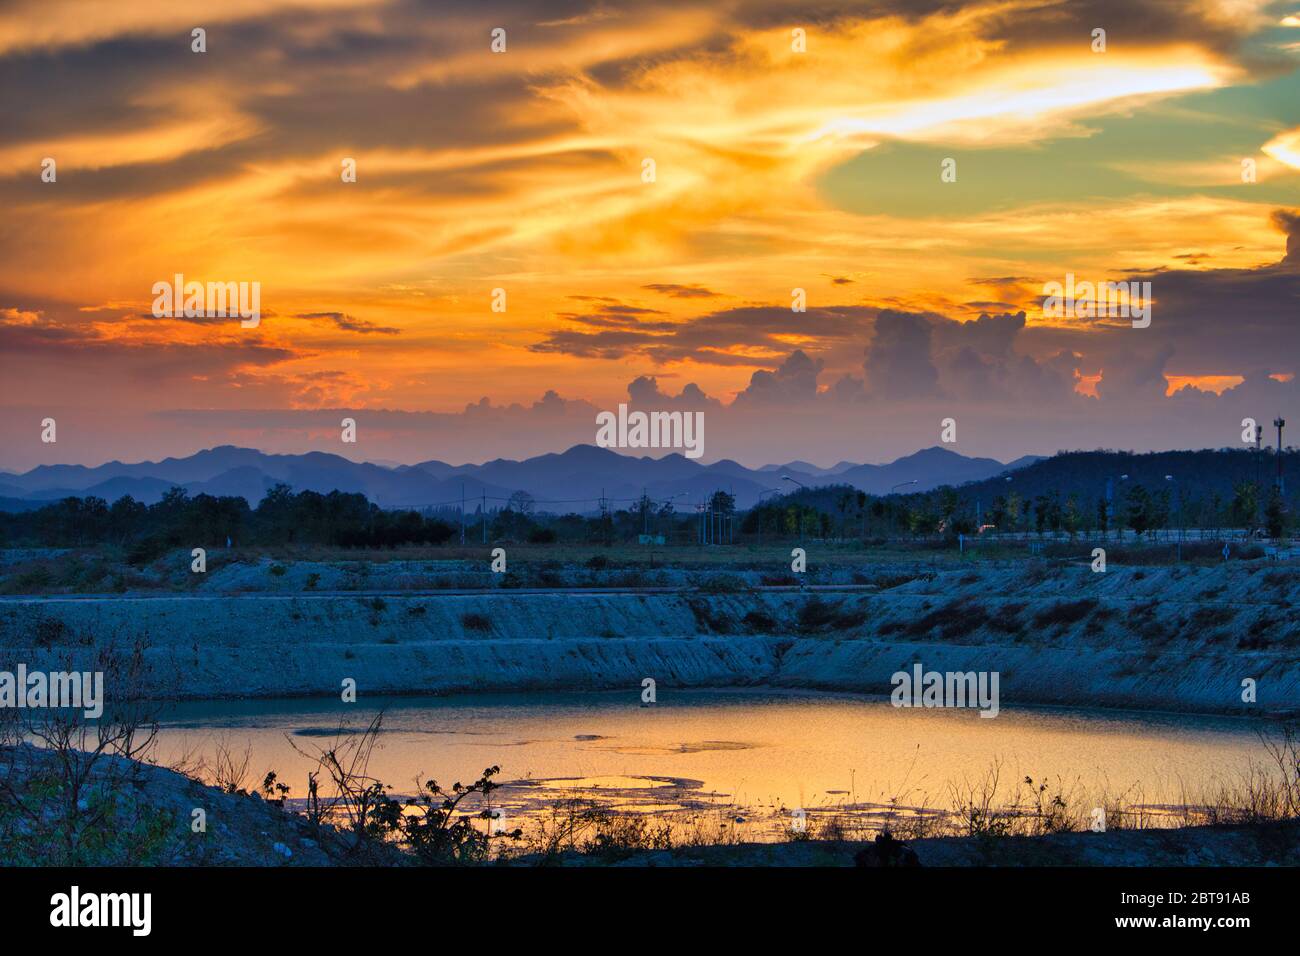 Cette photo unique montre un ciel rouge vif de coucher de soleil reflété dans un lac. En arrière-plan, vous pouvez encore voir les montagnes de Hua Hin en Thaïlande très bien Banque D'Images